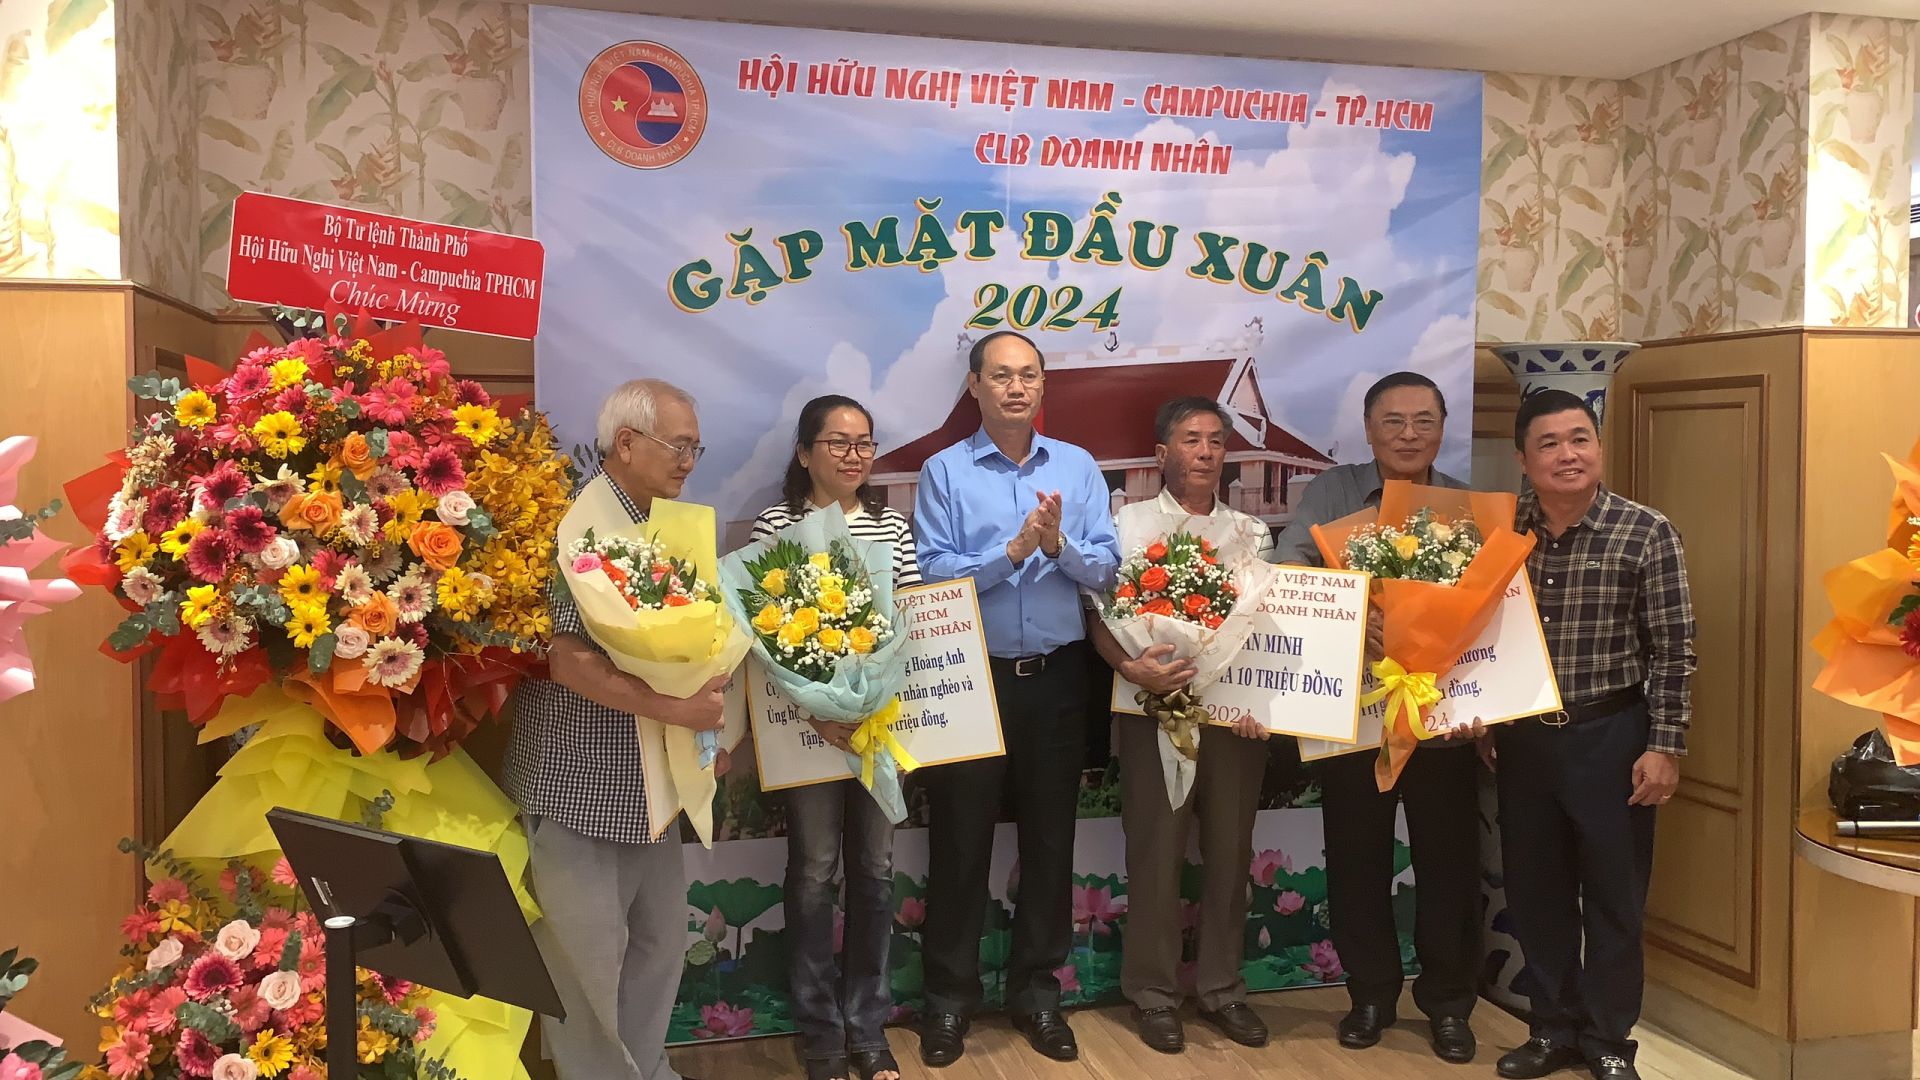 Trung tướng Nguyễn Văn Nam tặng hoa các doanh nghiệp có nhiều đóng góp cho hoạt động xã hội, từ thiện của Hội Hữu nghị Việt Nam - Campuchia TPHCM